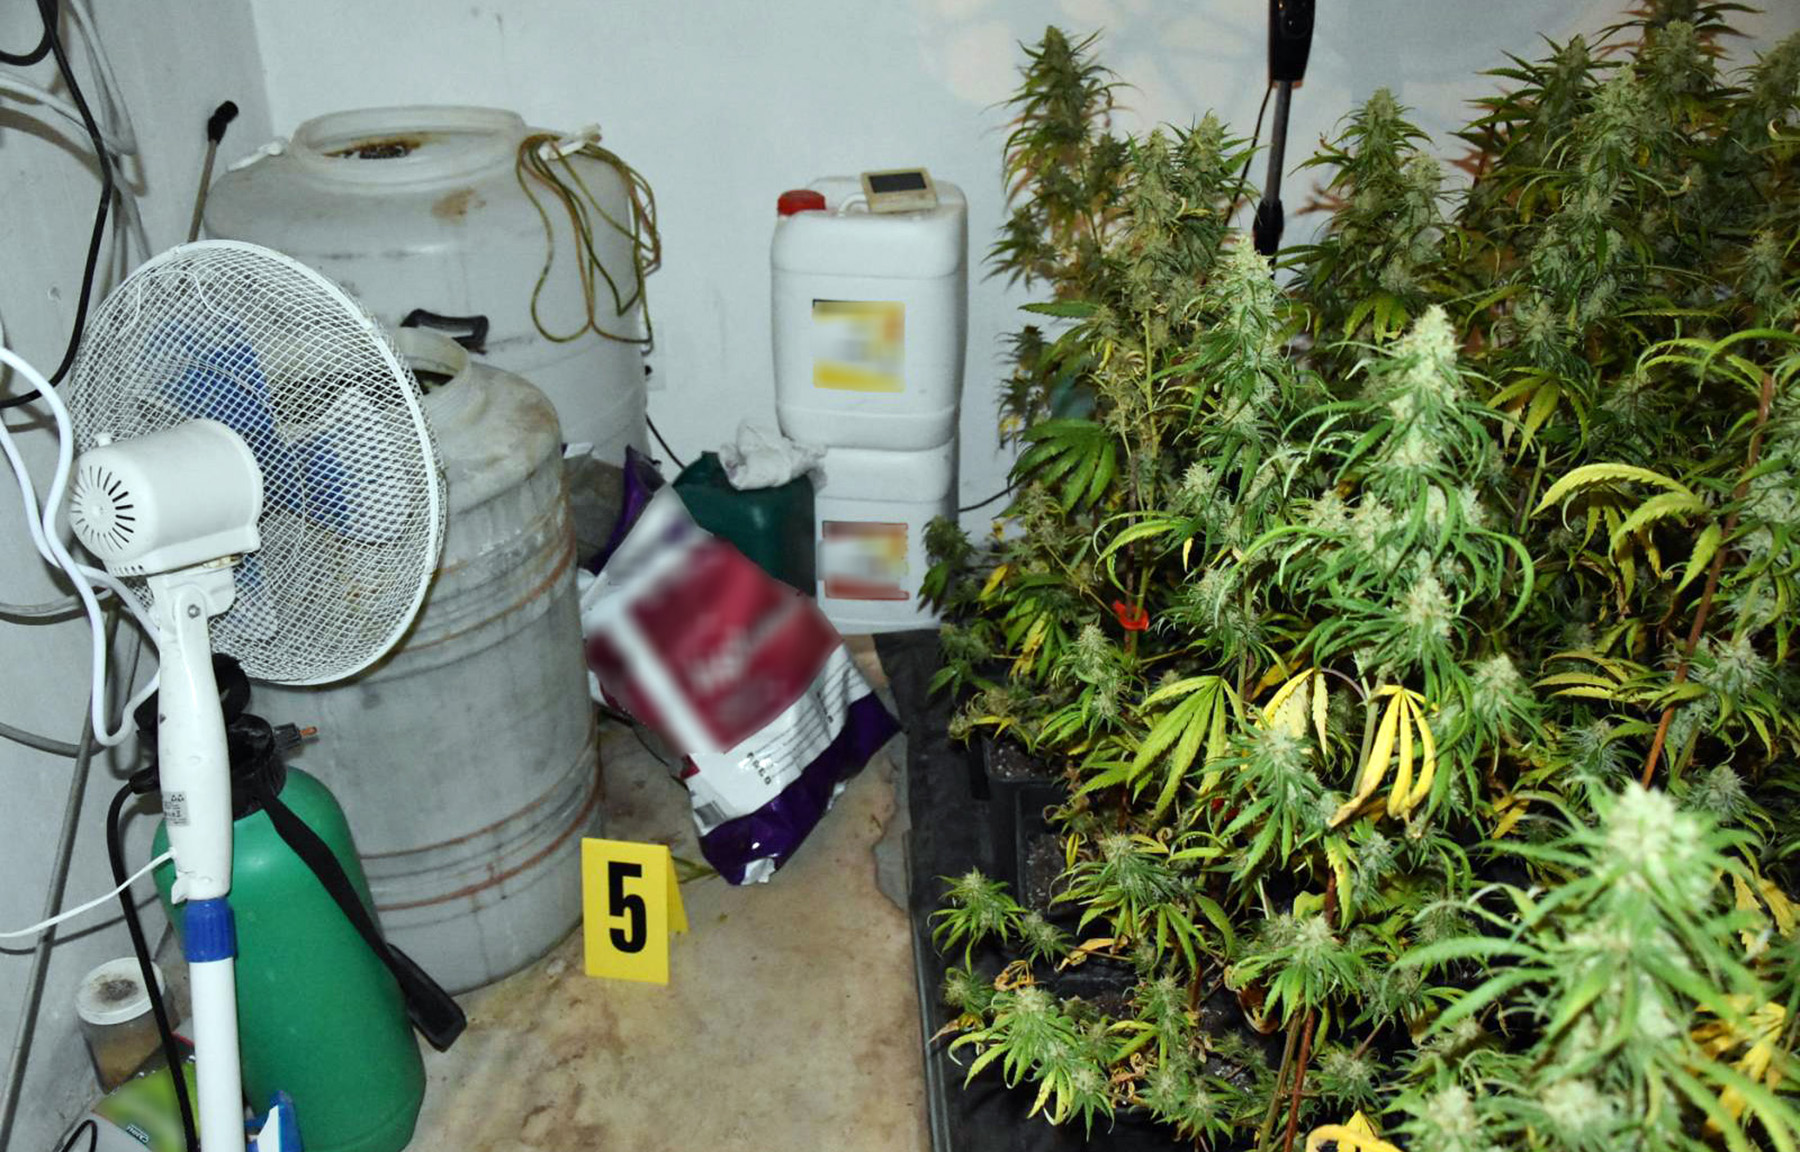 Пронађена илегална лабораторија за узгој марихуане и ухапшен осумњичени